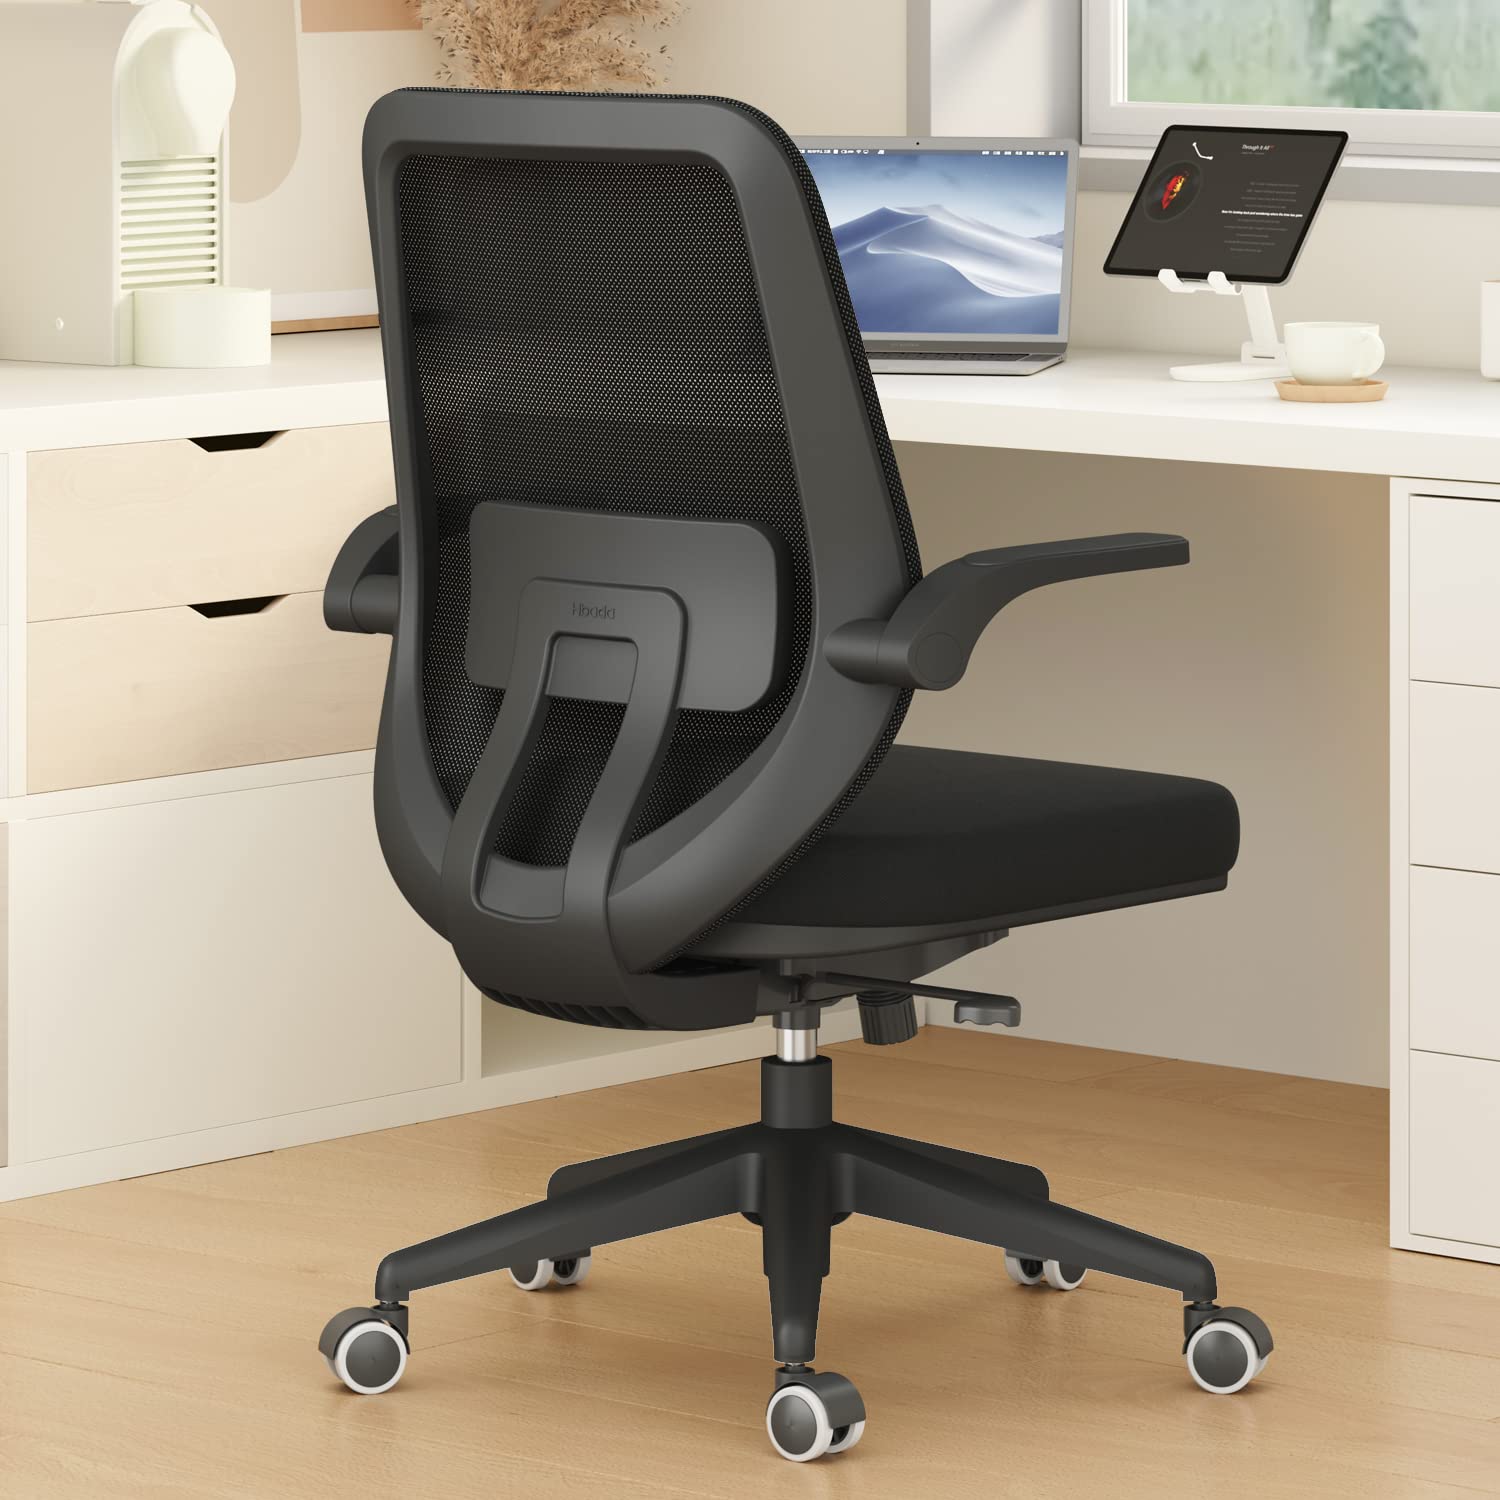  Hbada Офисный стул Стул для рабочего стола Поворотные домашние комфортные стулья с откидными подлокотниками и...